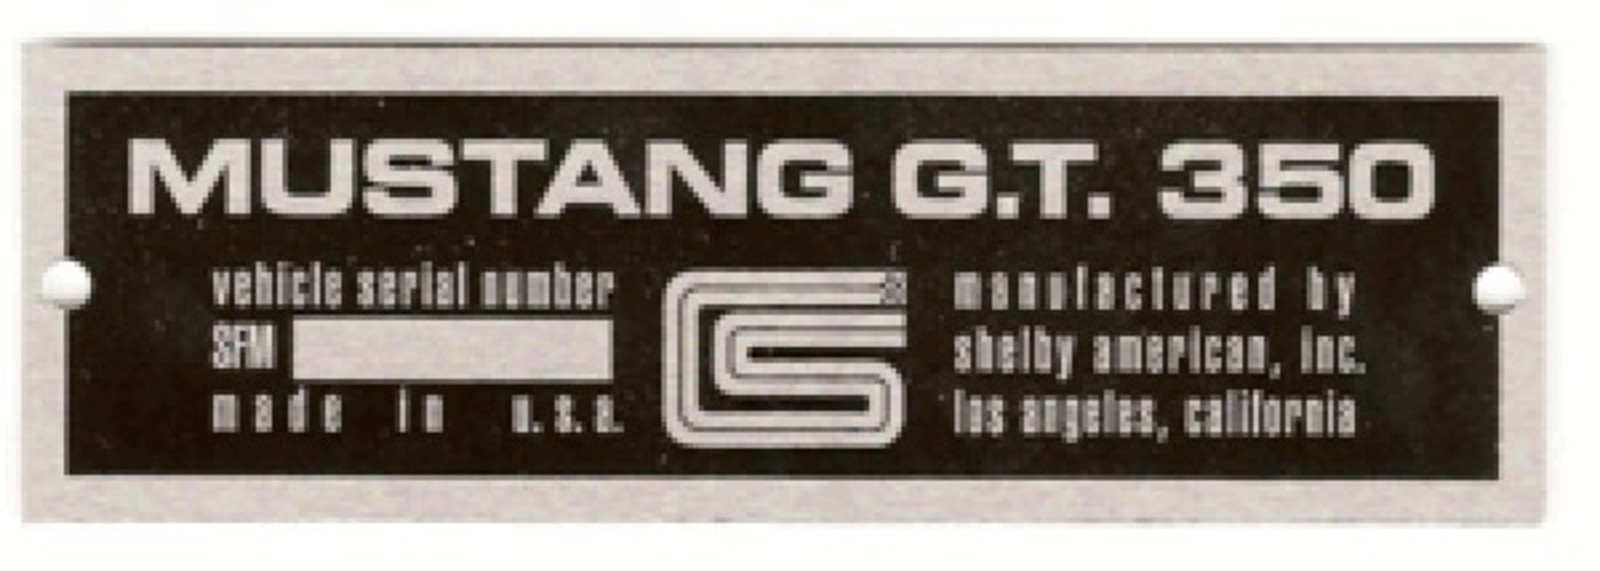 66 GT350 DATA PLATE